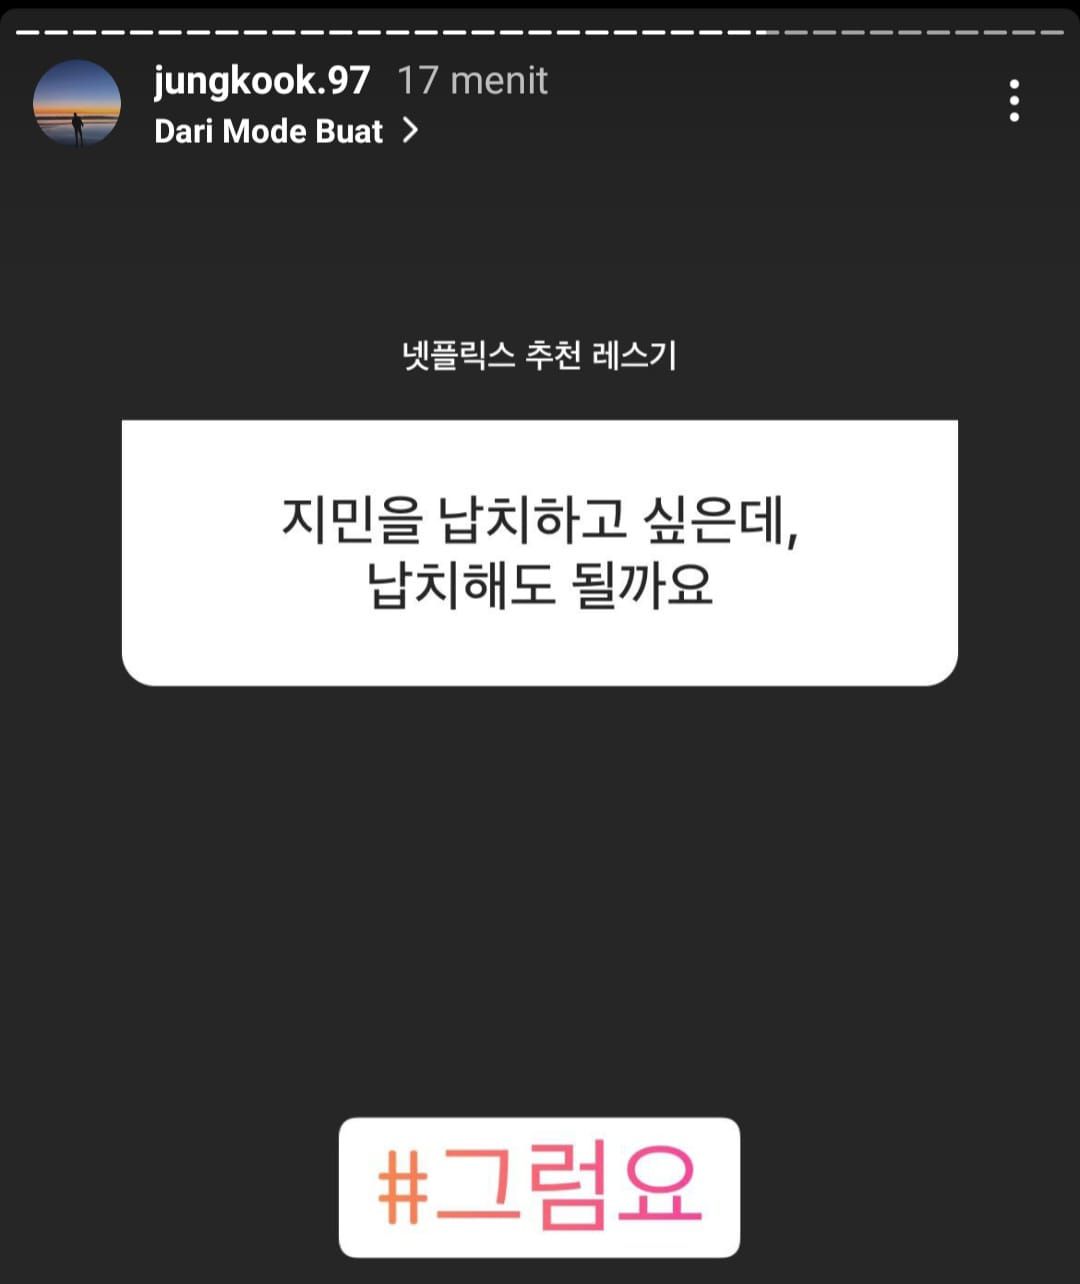 Jawaban Jungkook BTS Untuk pertanyayn tentang Jimin